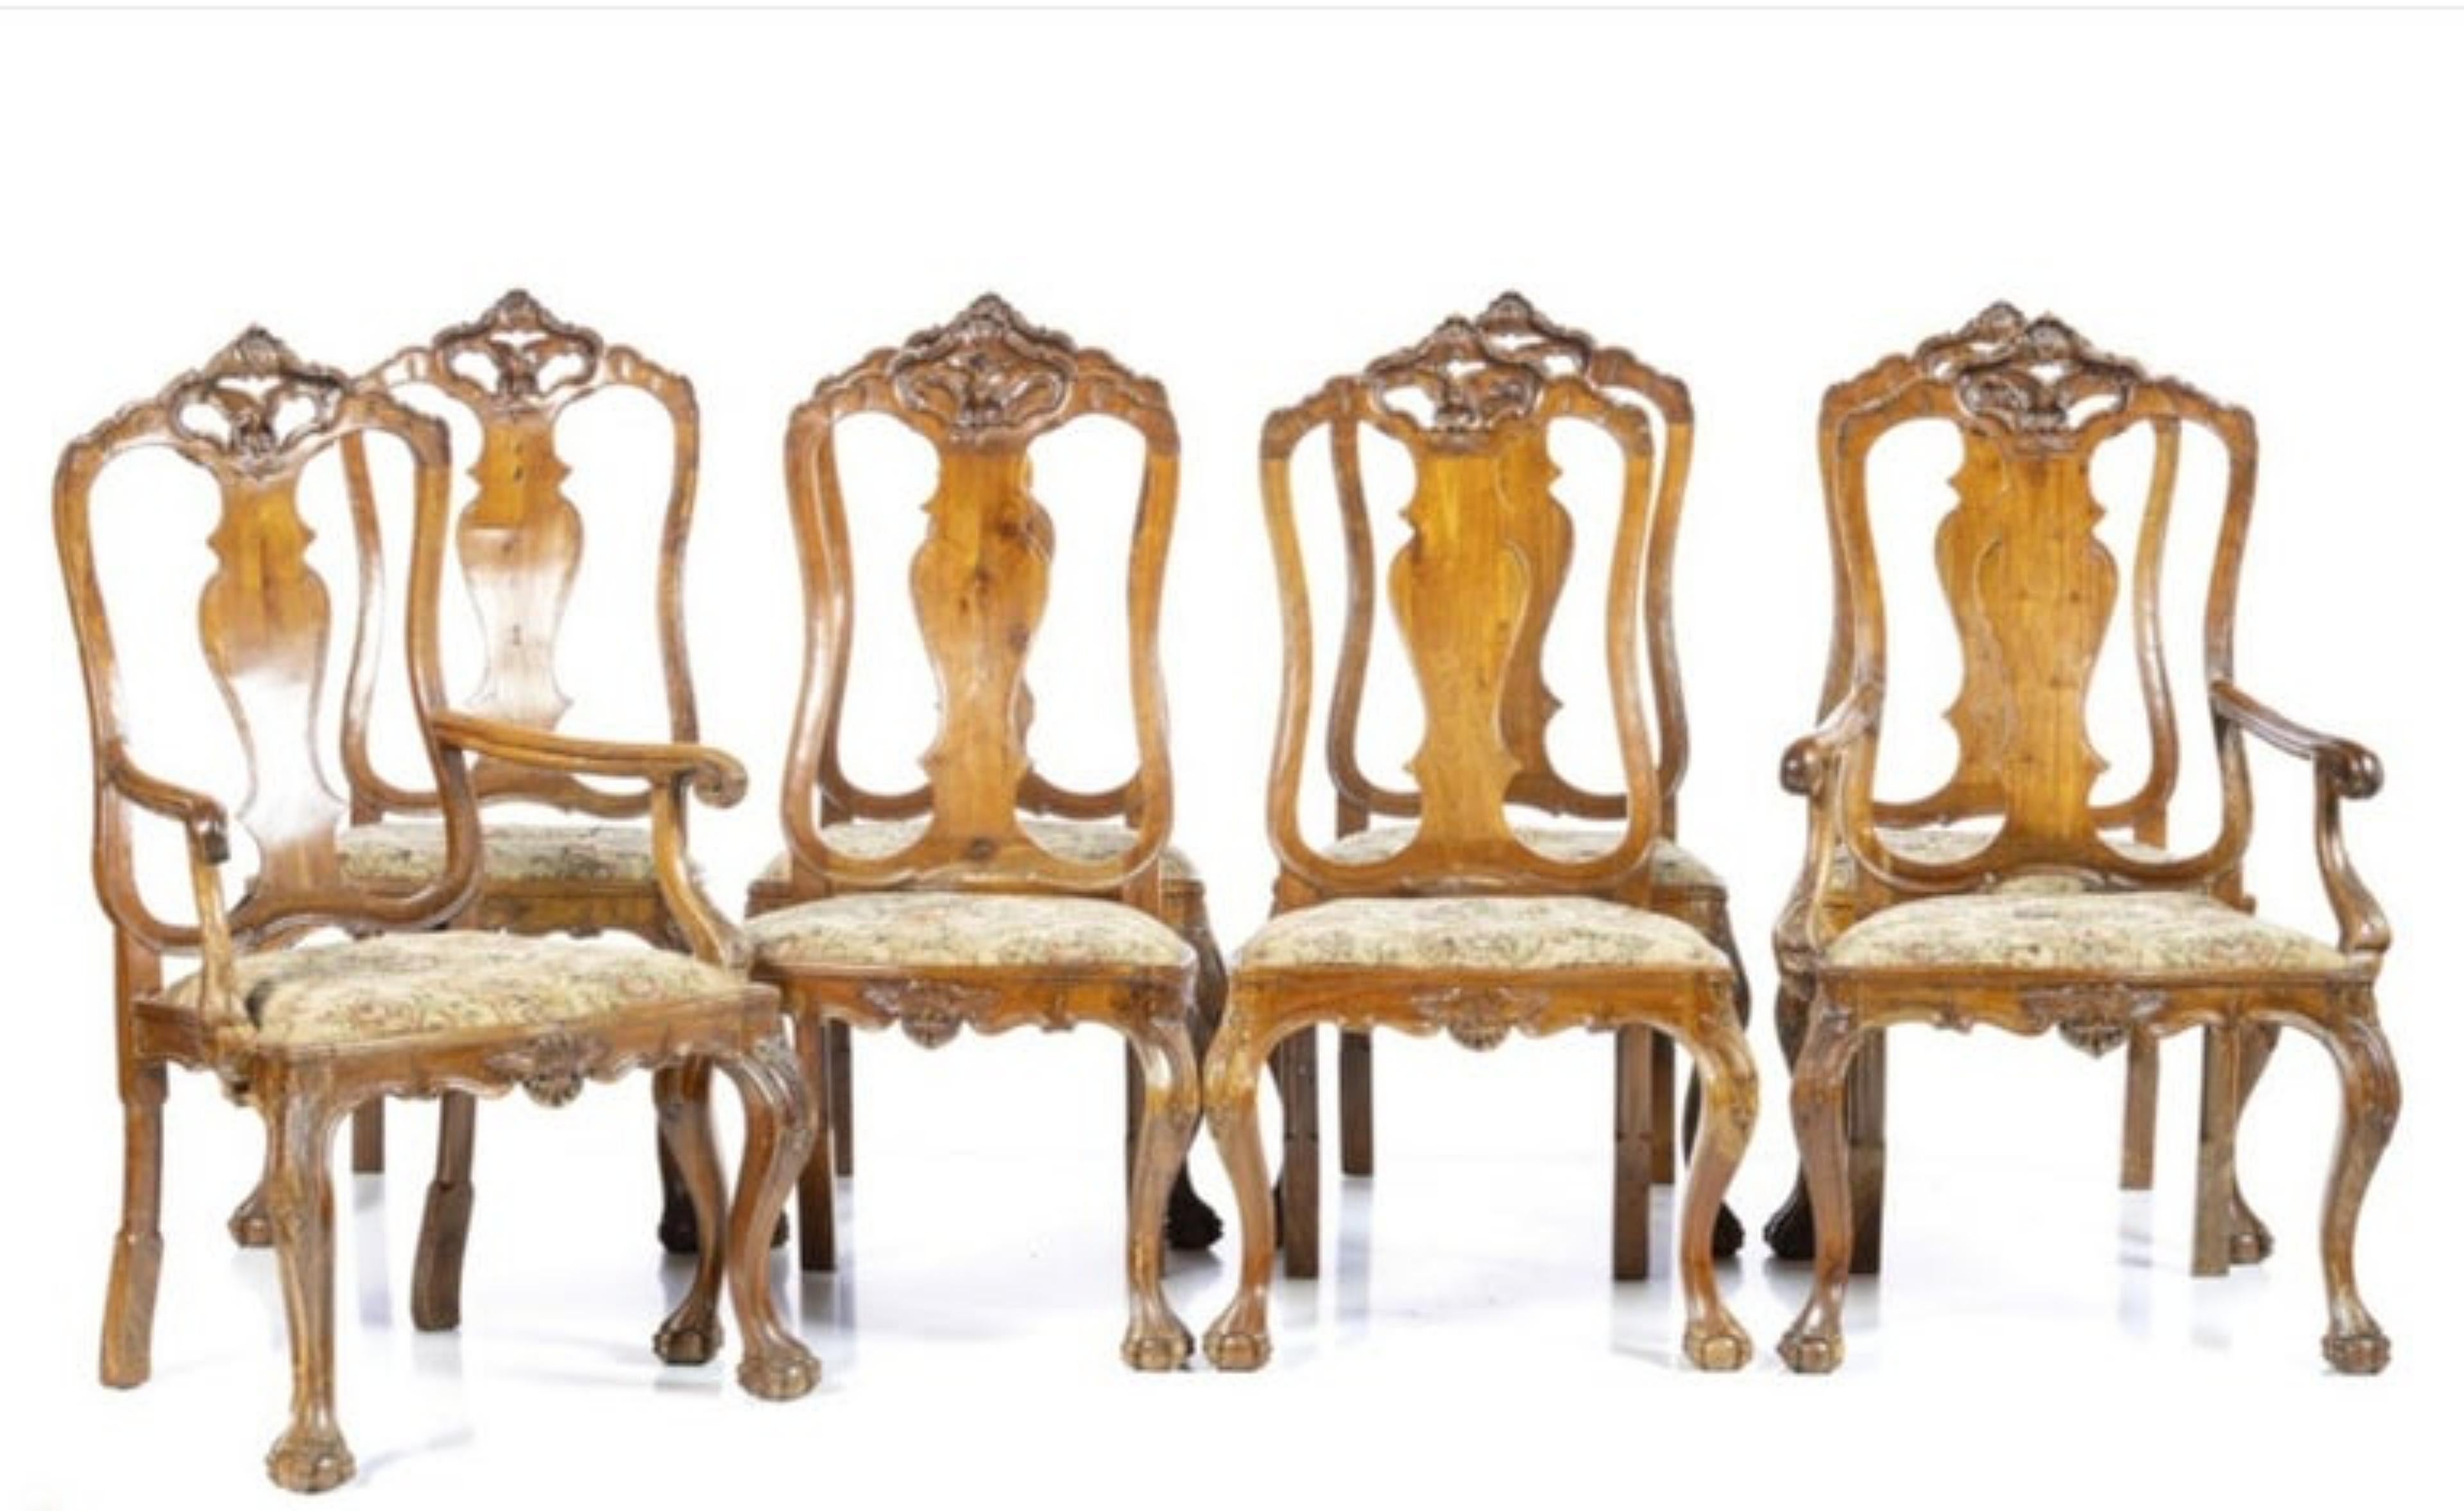 SATZ VON SECHS STÜHLEN UND ZWEI STÜHLEN

Portugiesisch D. João V, 18. Jahrhundert
aus geschnitztem Walnussholz.
Die Sitze sind gepolstert.
Abmessung: (Stuhl) 110 x 64 x 49 cm
gute Bedingungen.